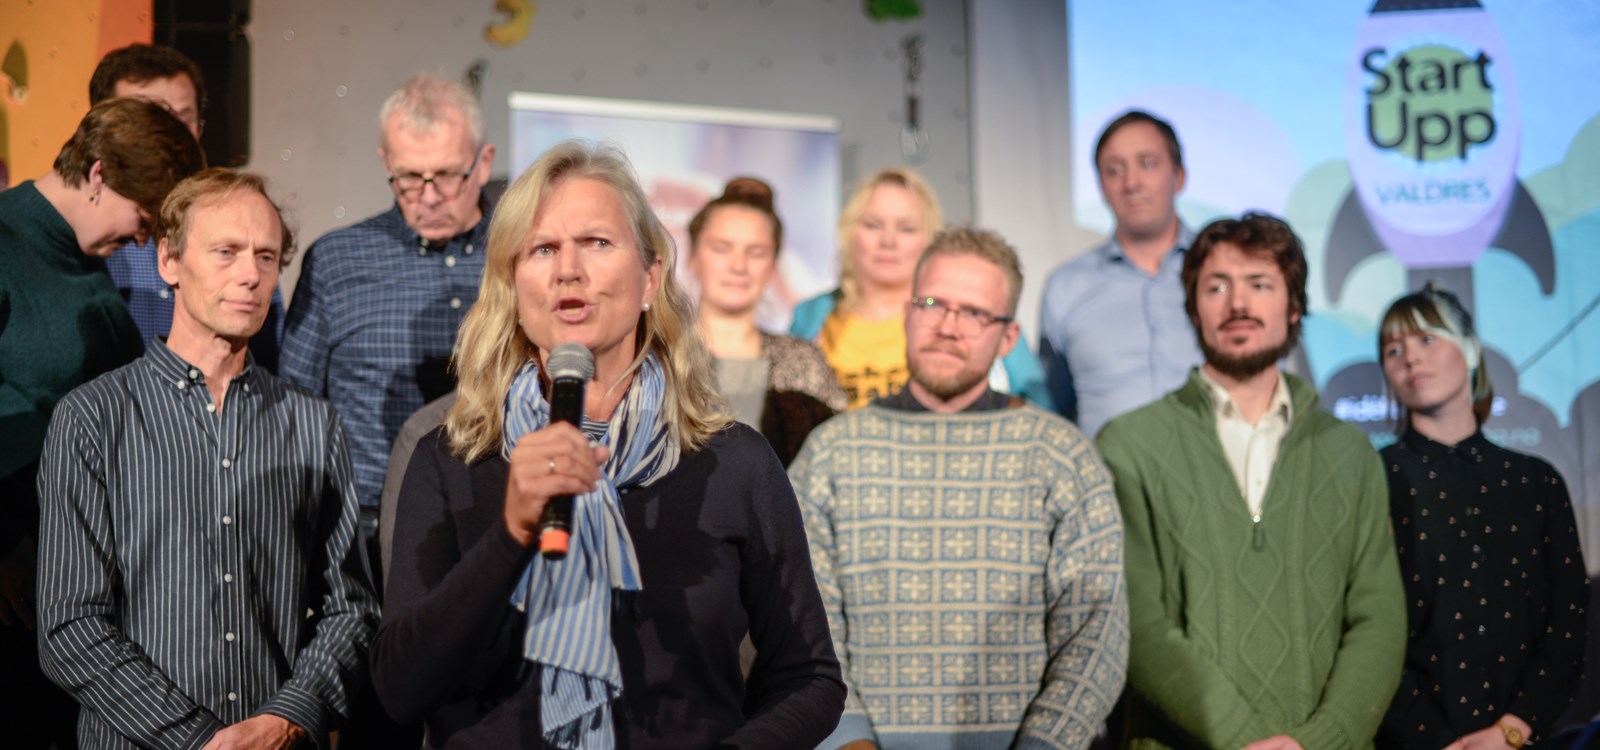 Kristin Krohn Devold kunngjer kven som vinn årets StartUppValdres.